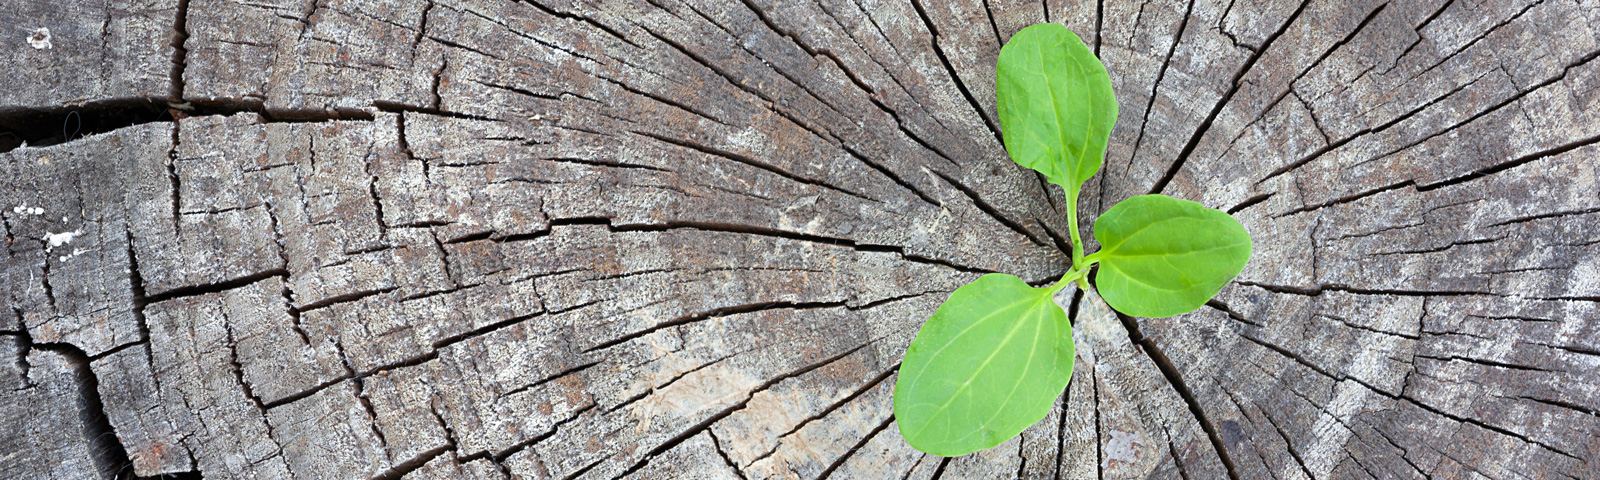 Umweltfreundliche Druckmedien – gruener Pflanztrieb, waechst aus grauem Baumstumpf